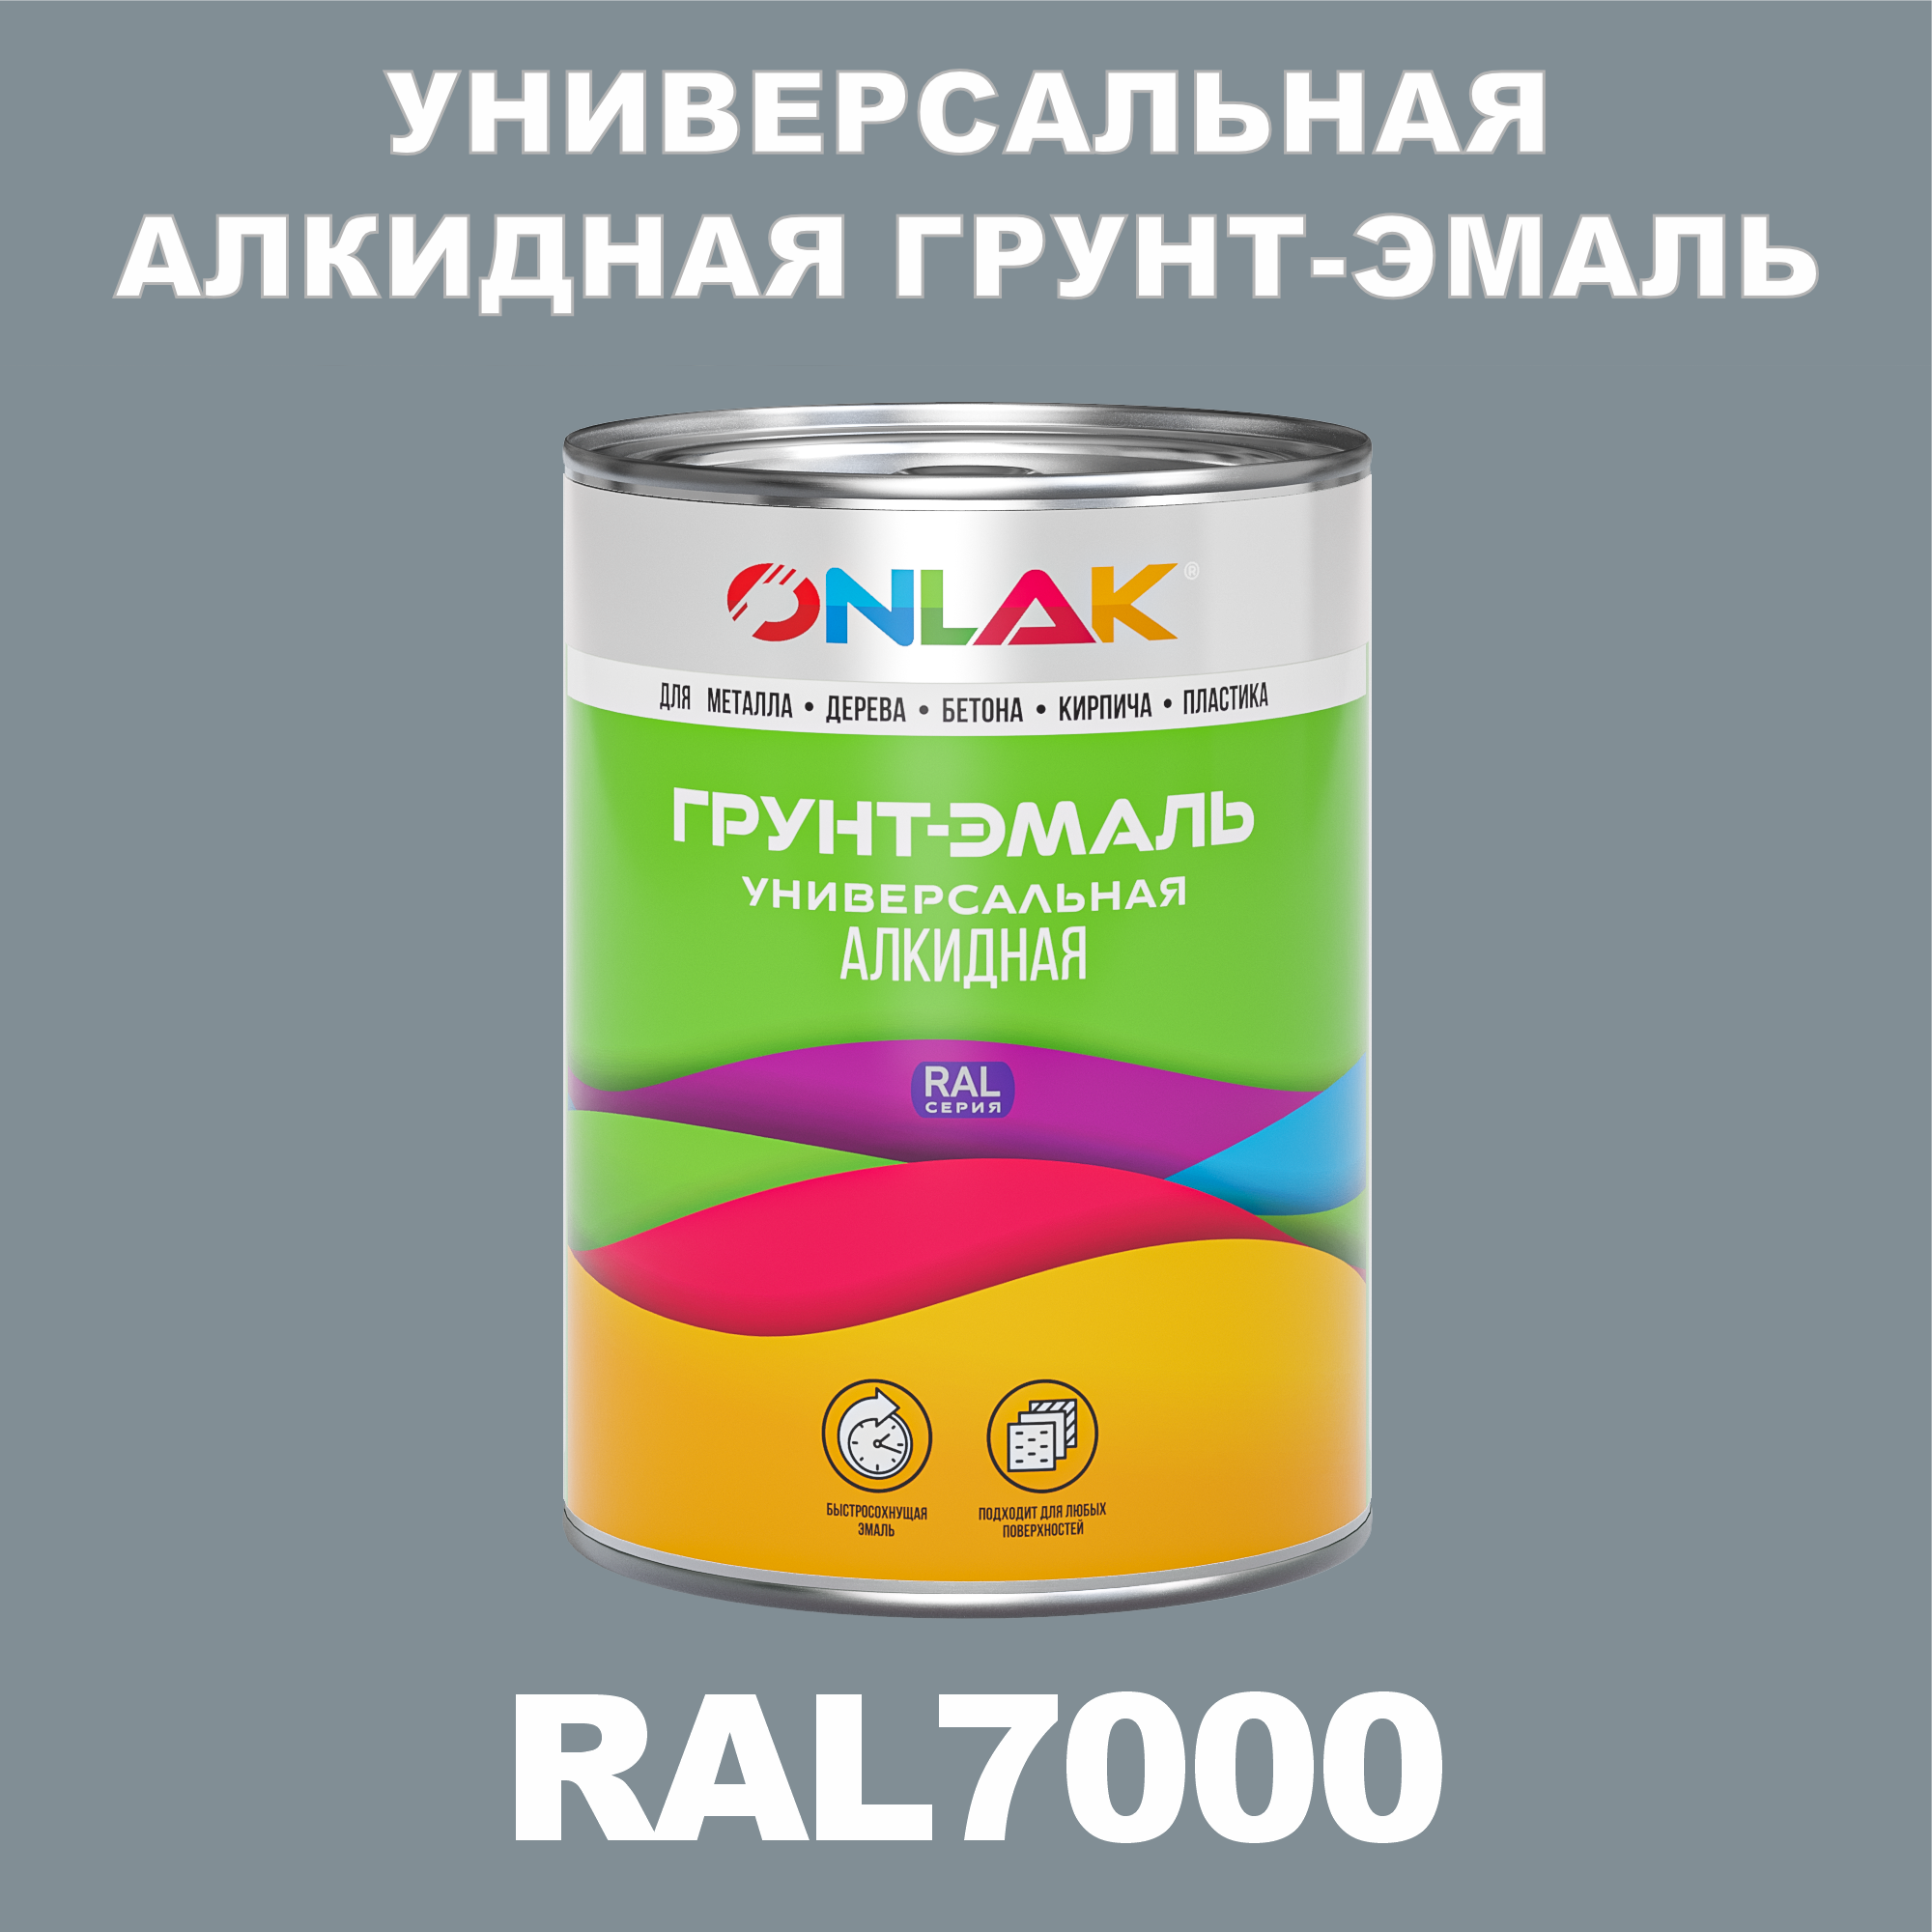 Грунт-эмаль ONLAK 1К RAL7000 антикоррозионная алкидная по металлу по ржавчине 1 кг грунт эмаль neomid по ржавчине быстросохнущая алкидная серая 0 9 кг